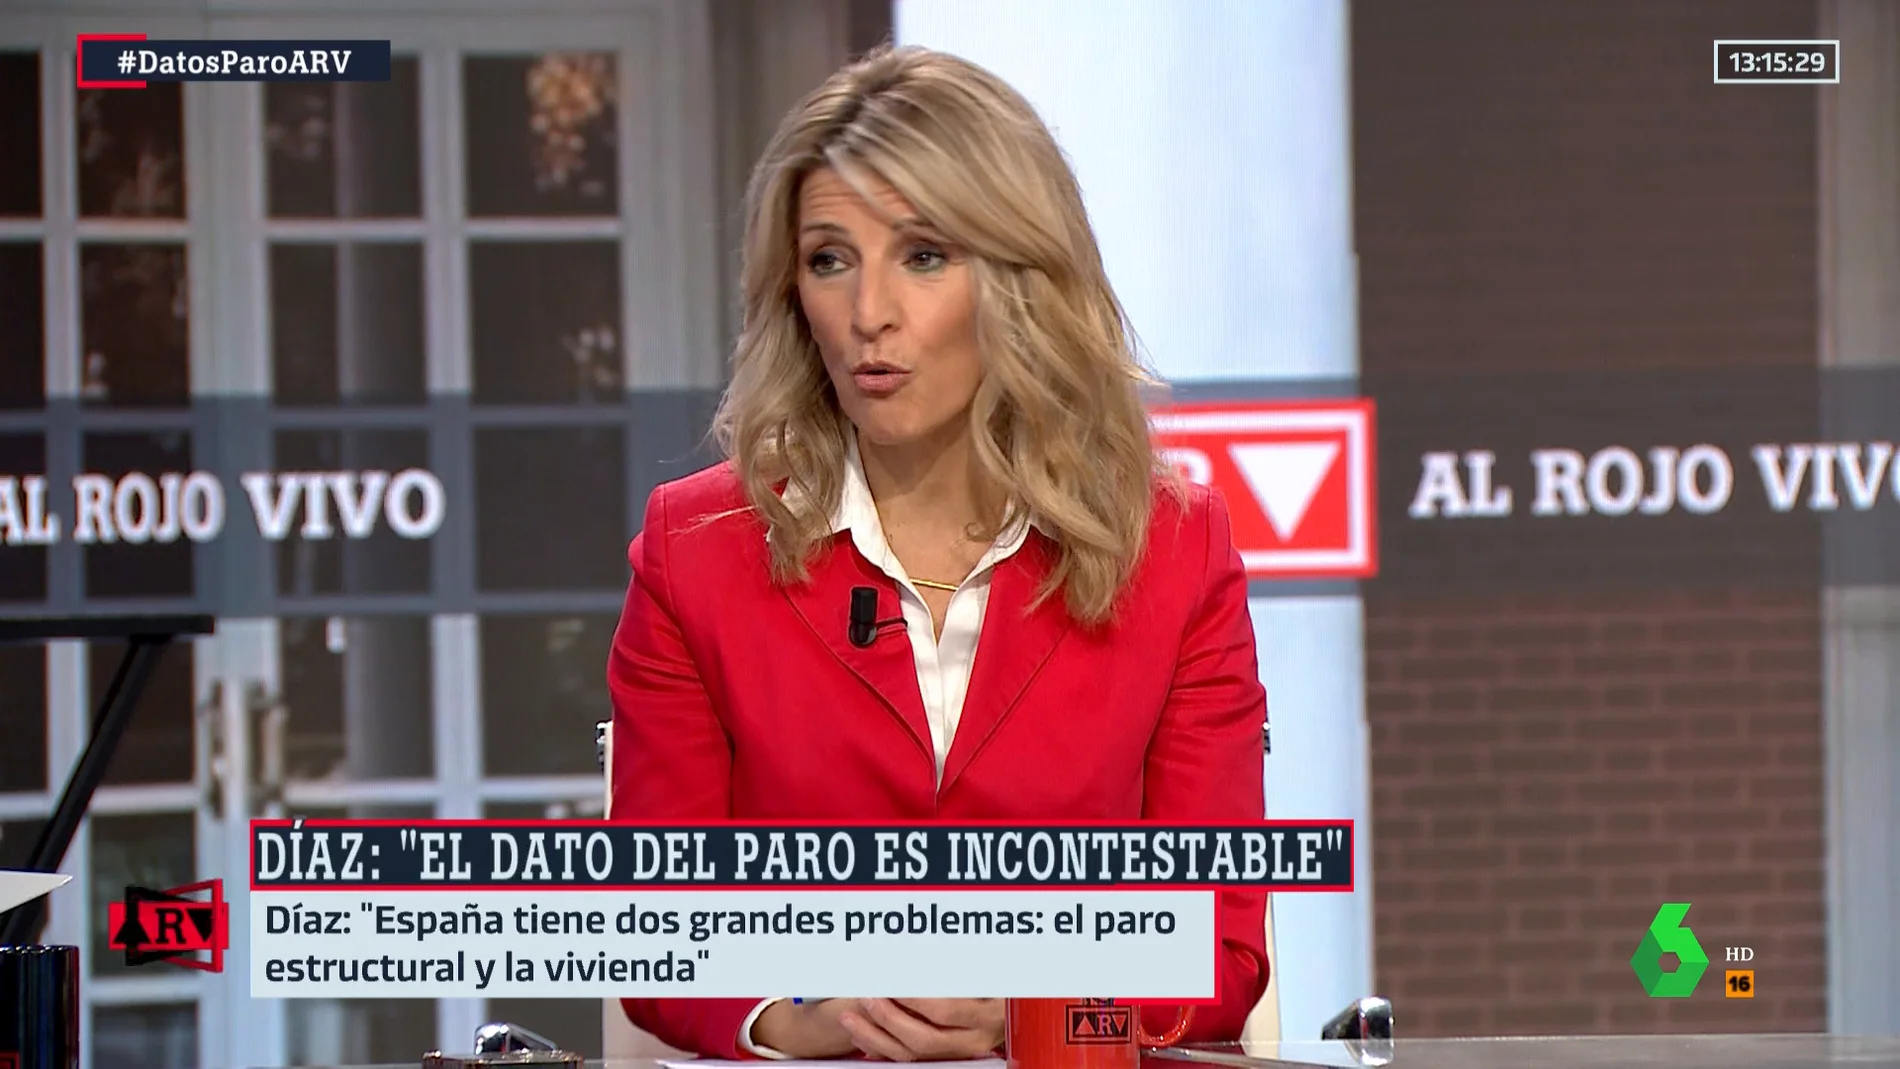 Yolanda Díaz reivindica una subida salarial en España hasta alcanzar los sueldos europeos: "No se puede vivir con dignidad con 1.545 euros al mes"